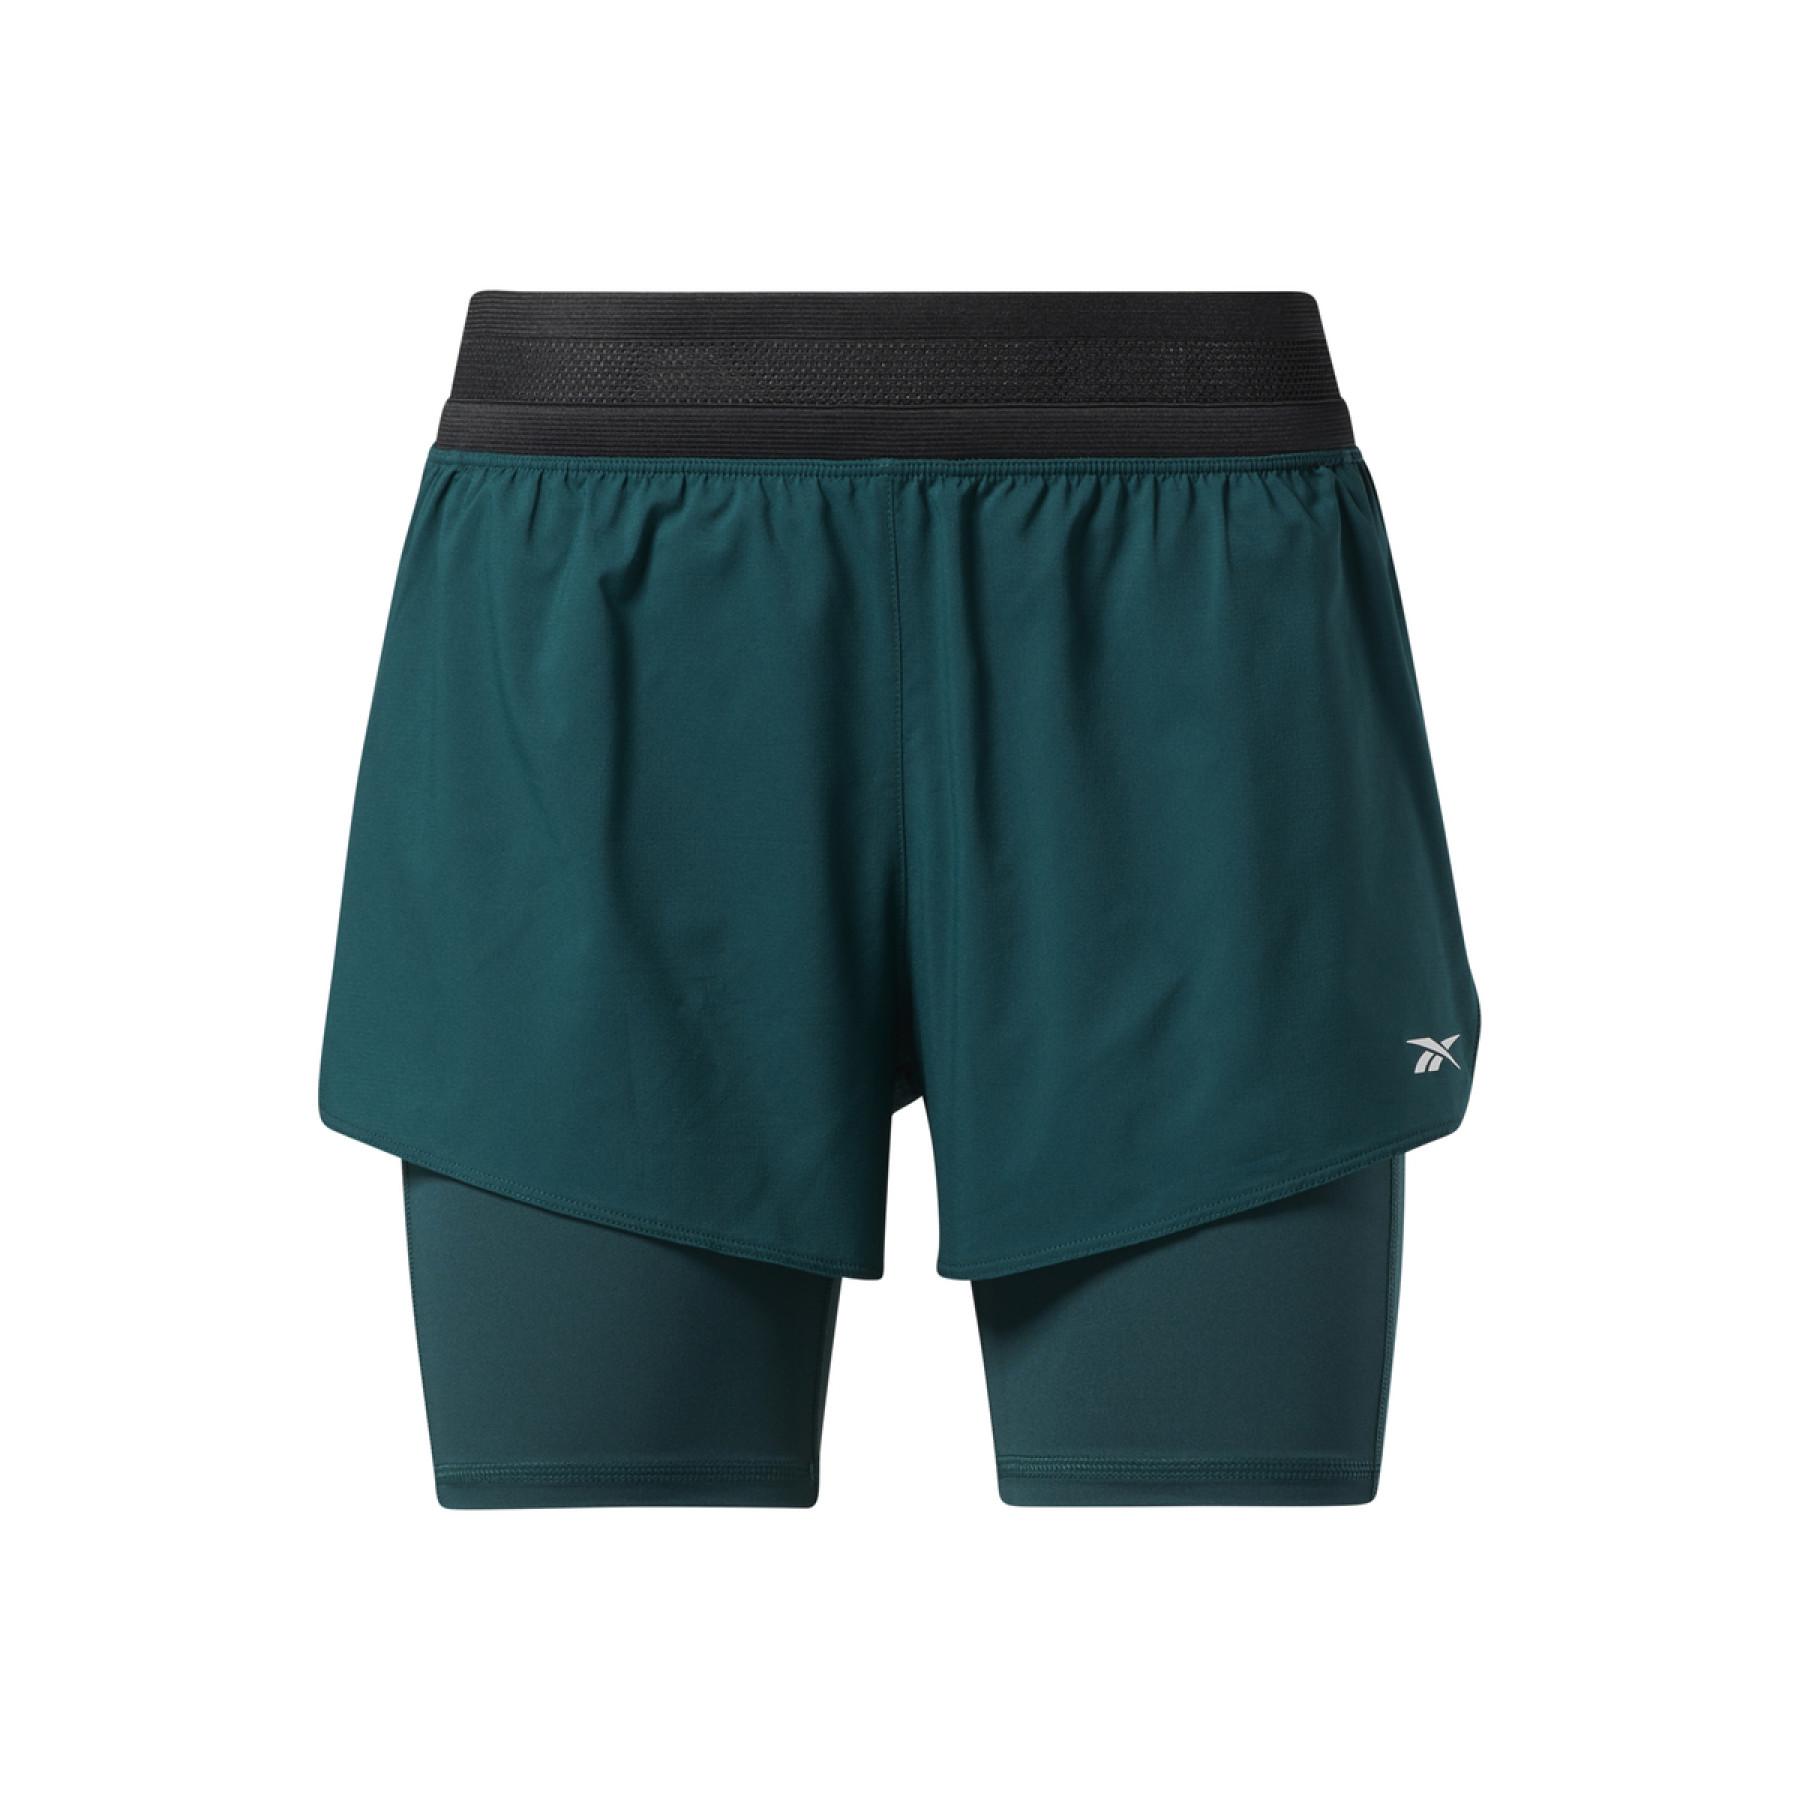 Women's shorts Reebok Les Mills® Lightweight